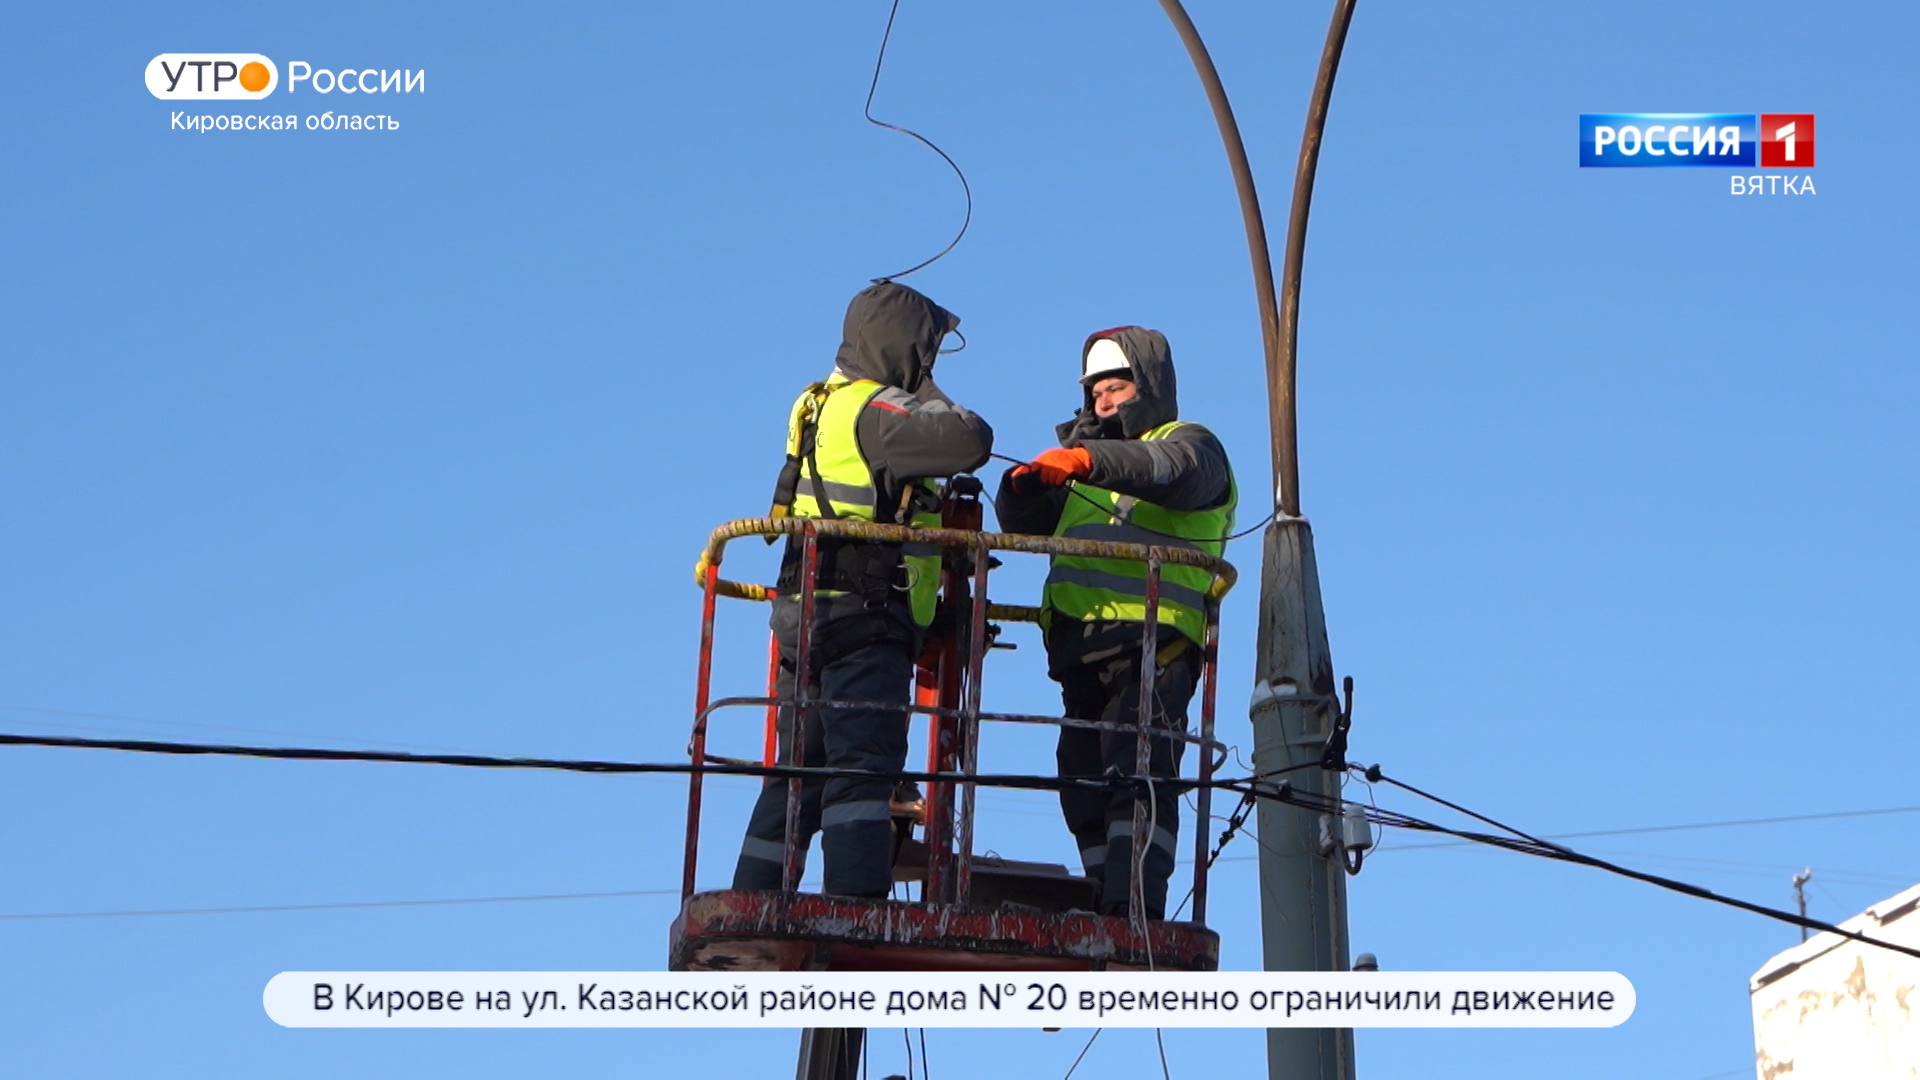 В Кирове и районах области начались масштабные работы по модернизации освещения